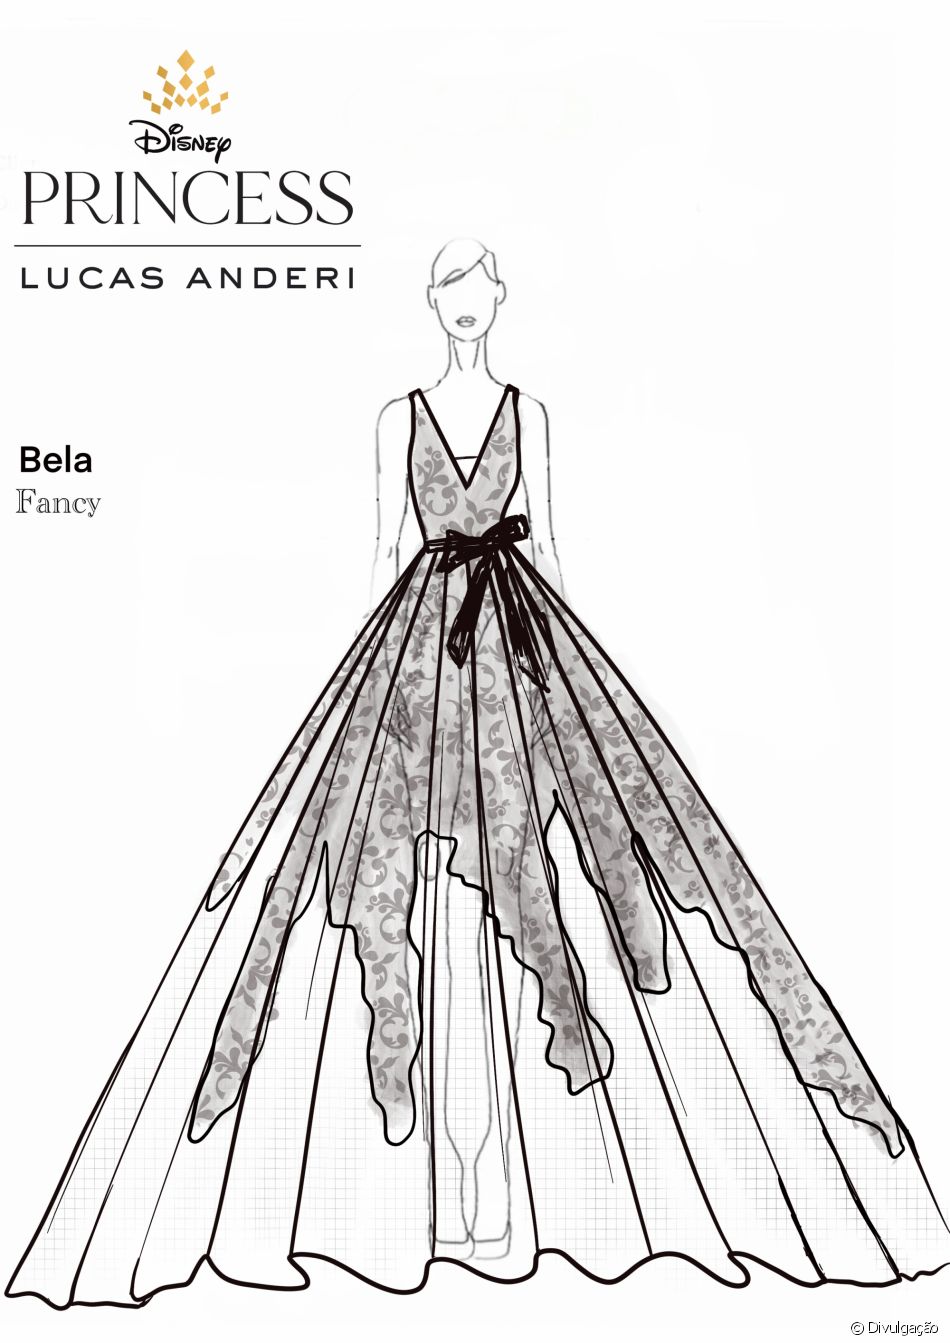 Croqui do estilista Lucas Anderi para coleção de noivas inspirada na Disney